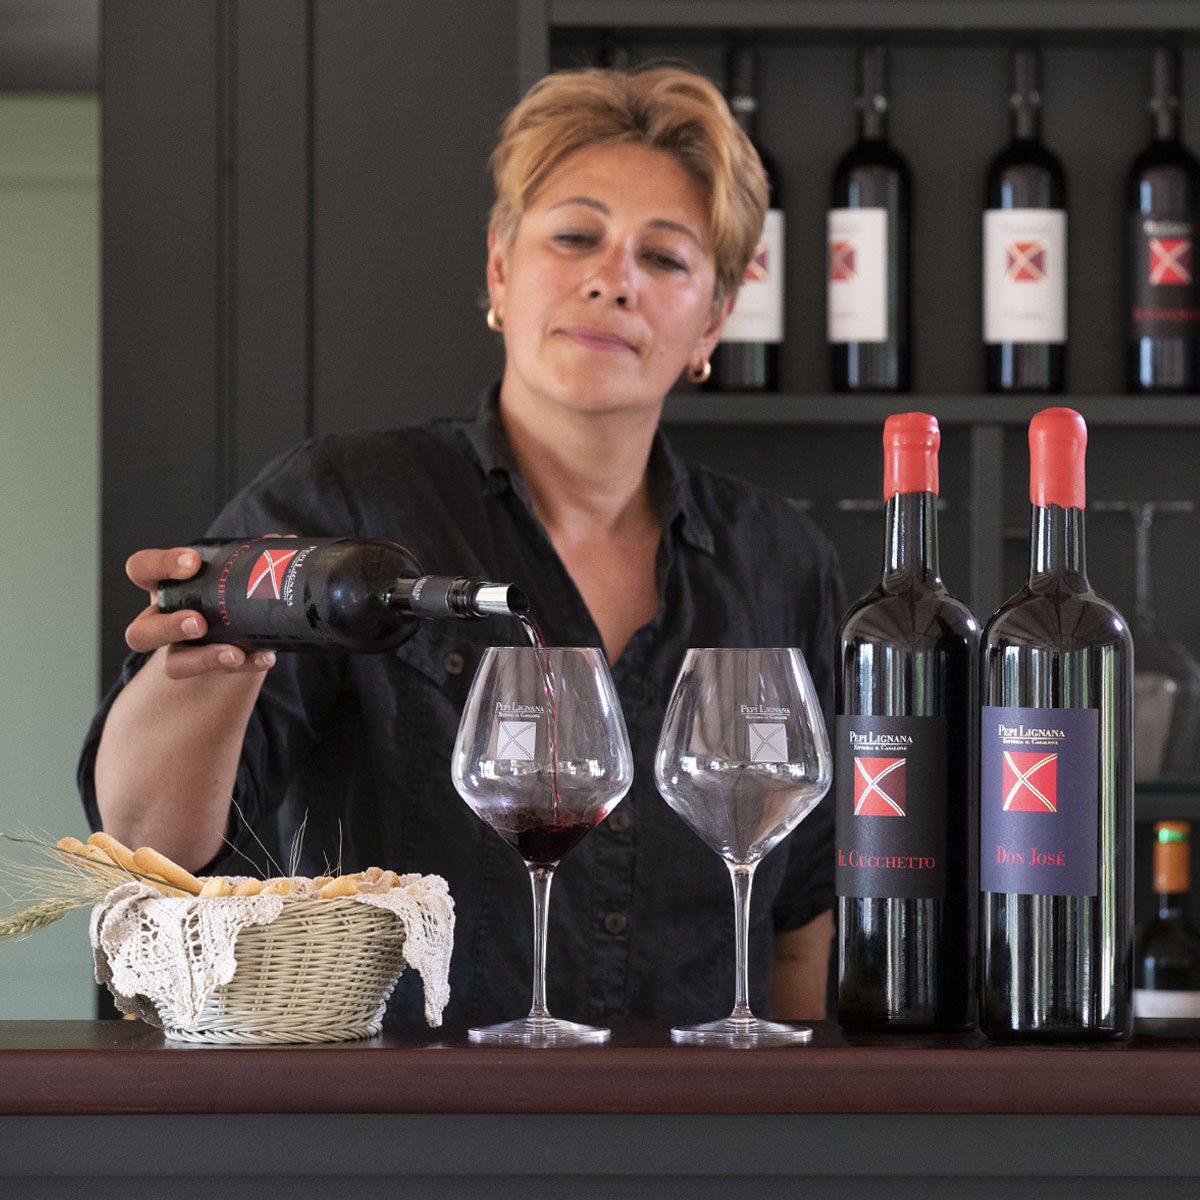 Visite Degustazioni Vino Pepi Lignana Wine 5q